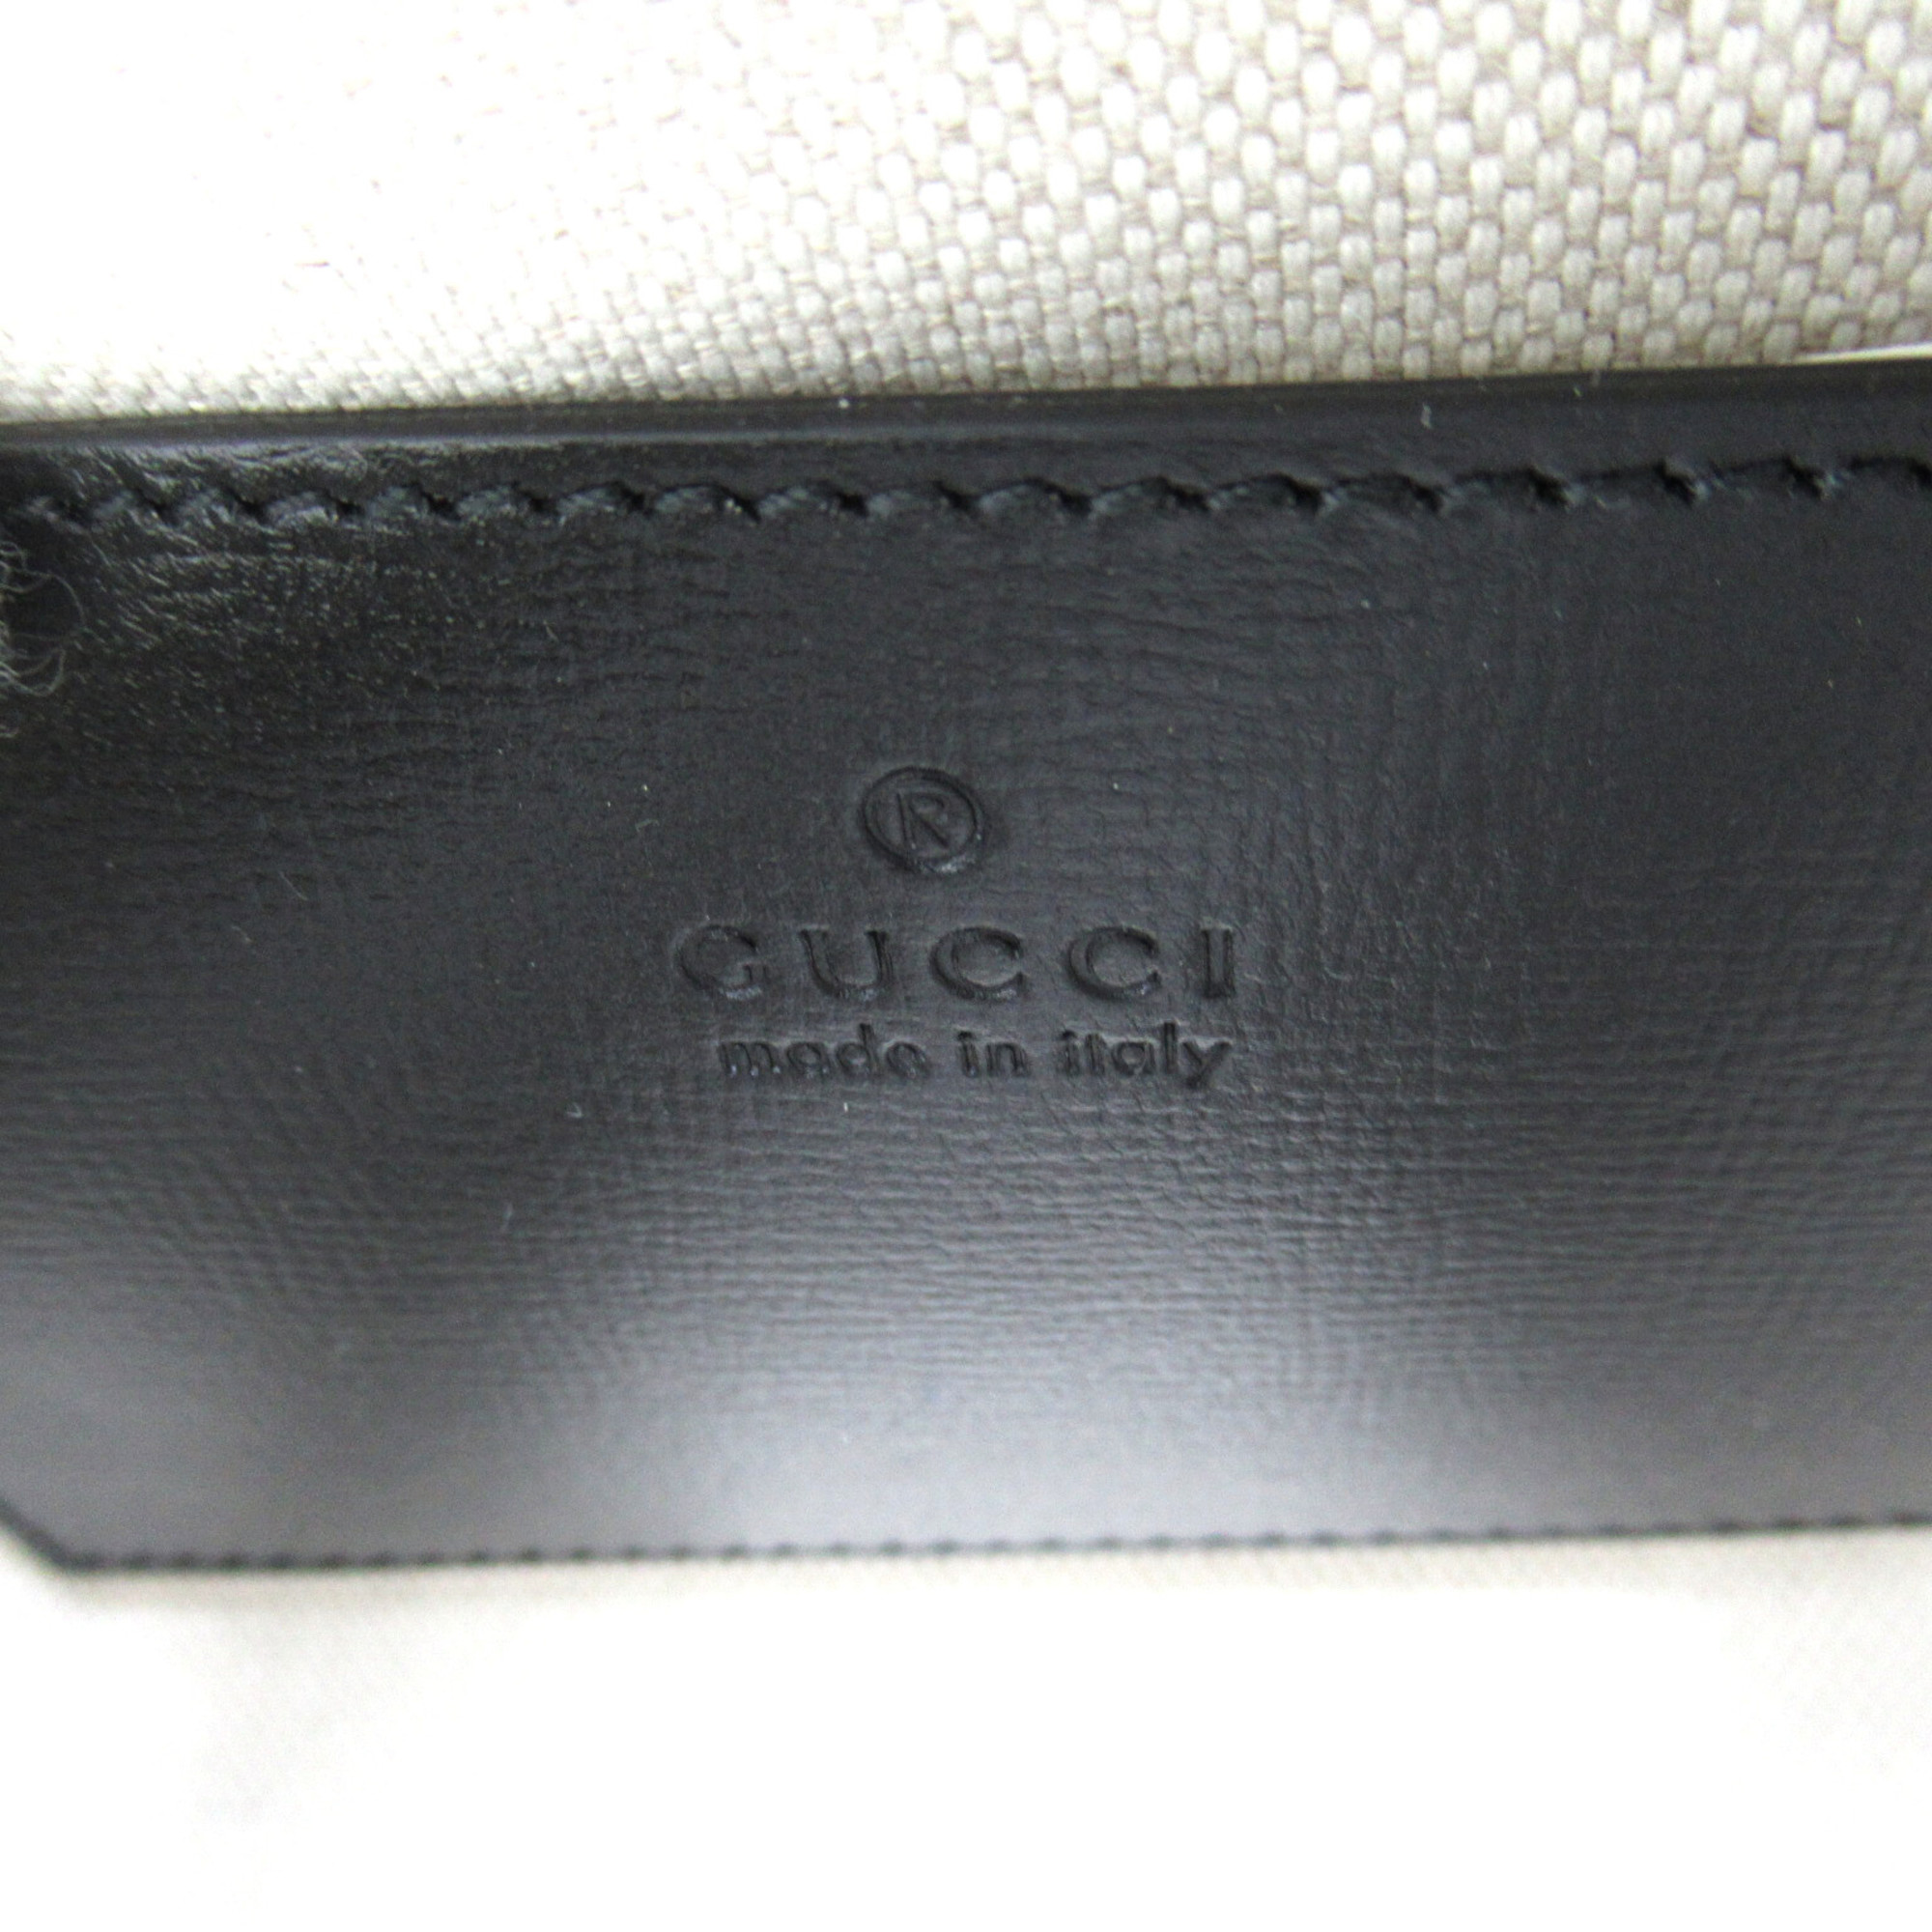 GUCCI [Gucci Horsebit 1955] Small Shoulder Bag Black leather 7601961AAQD1000